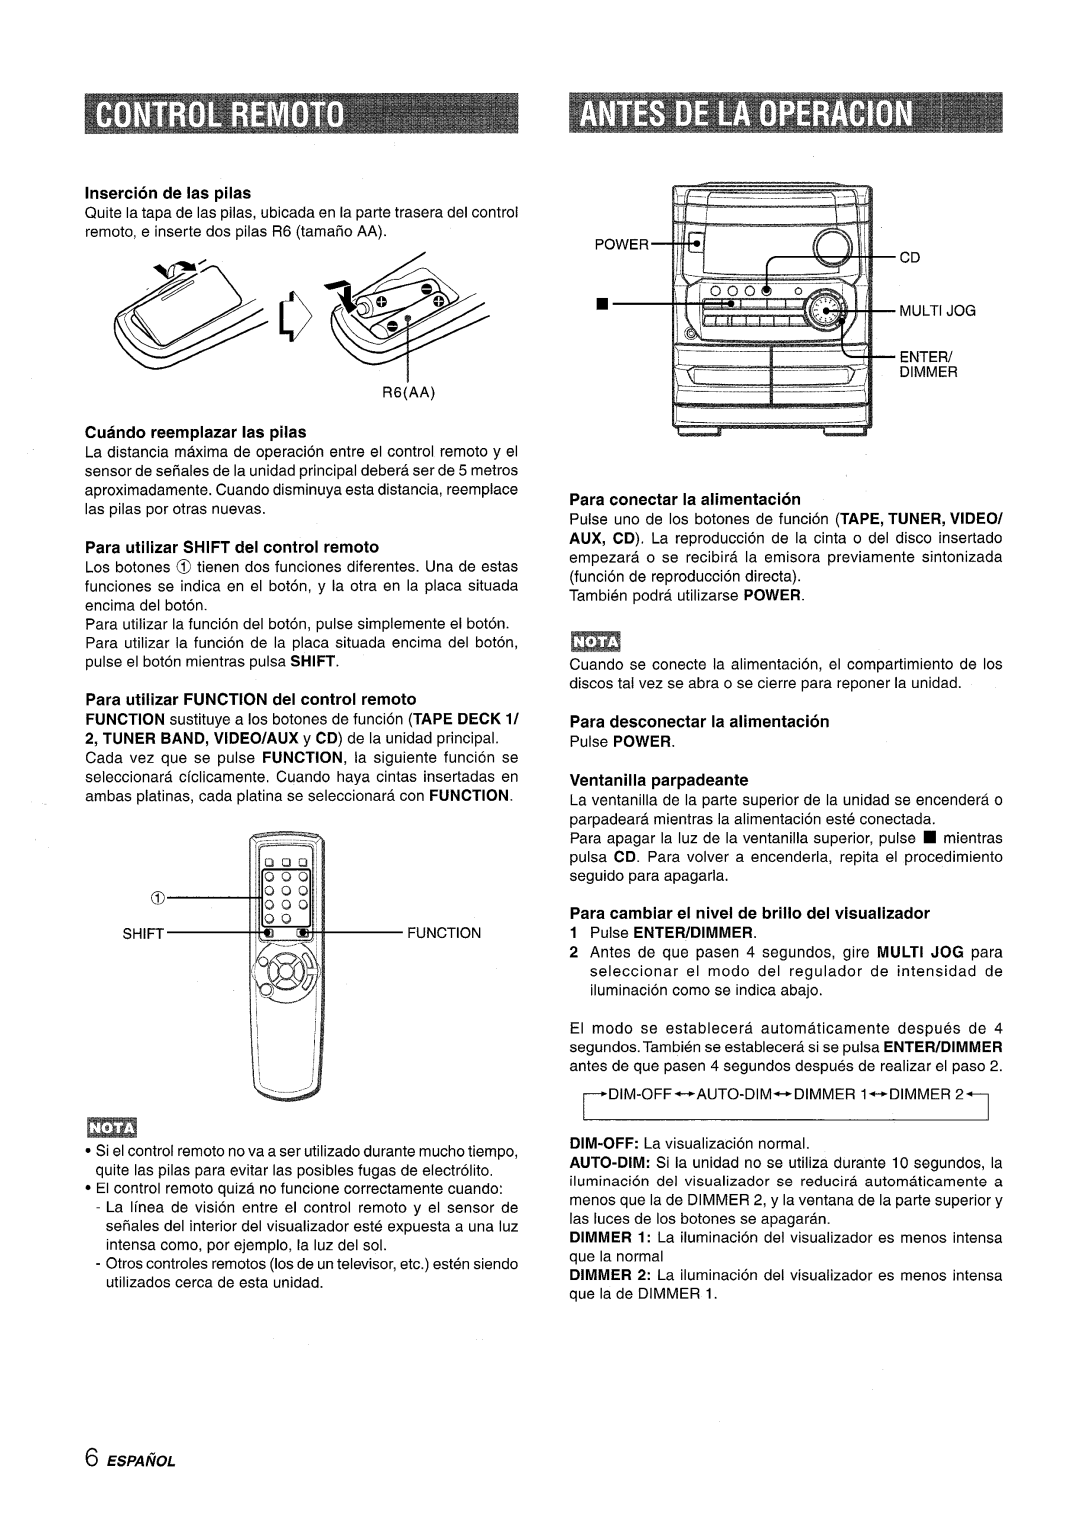 Aiwa CX-NA222 manual Insertion de las pilas, Cuando reemplazar Ias pilas, Para utilizar Shift del control remoto 